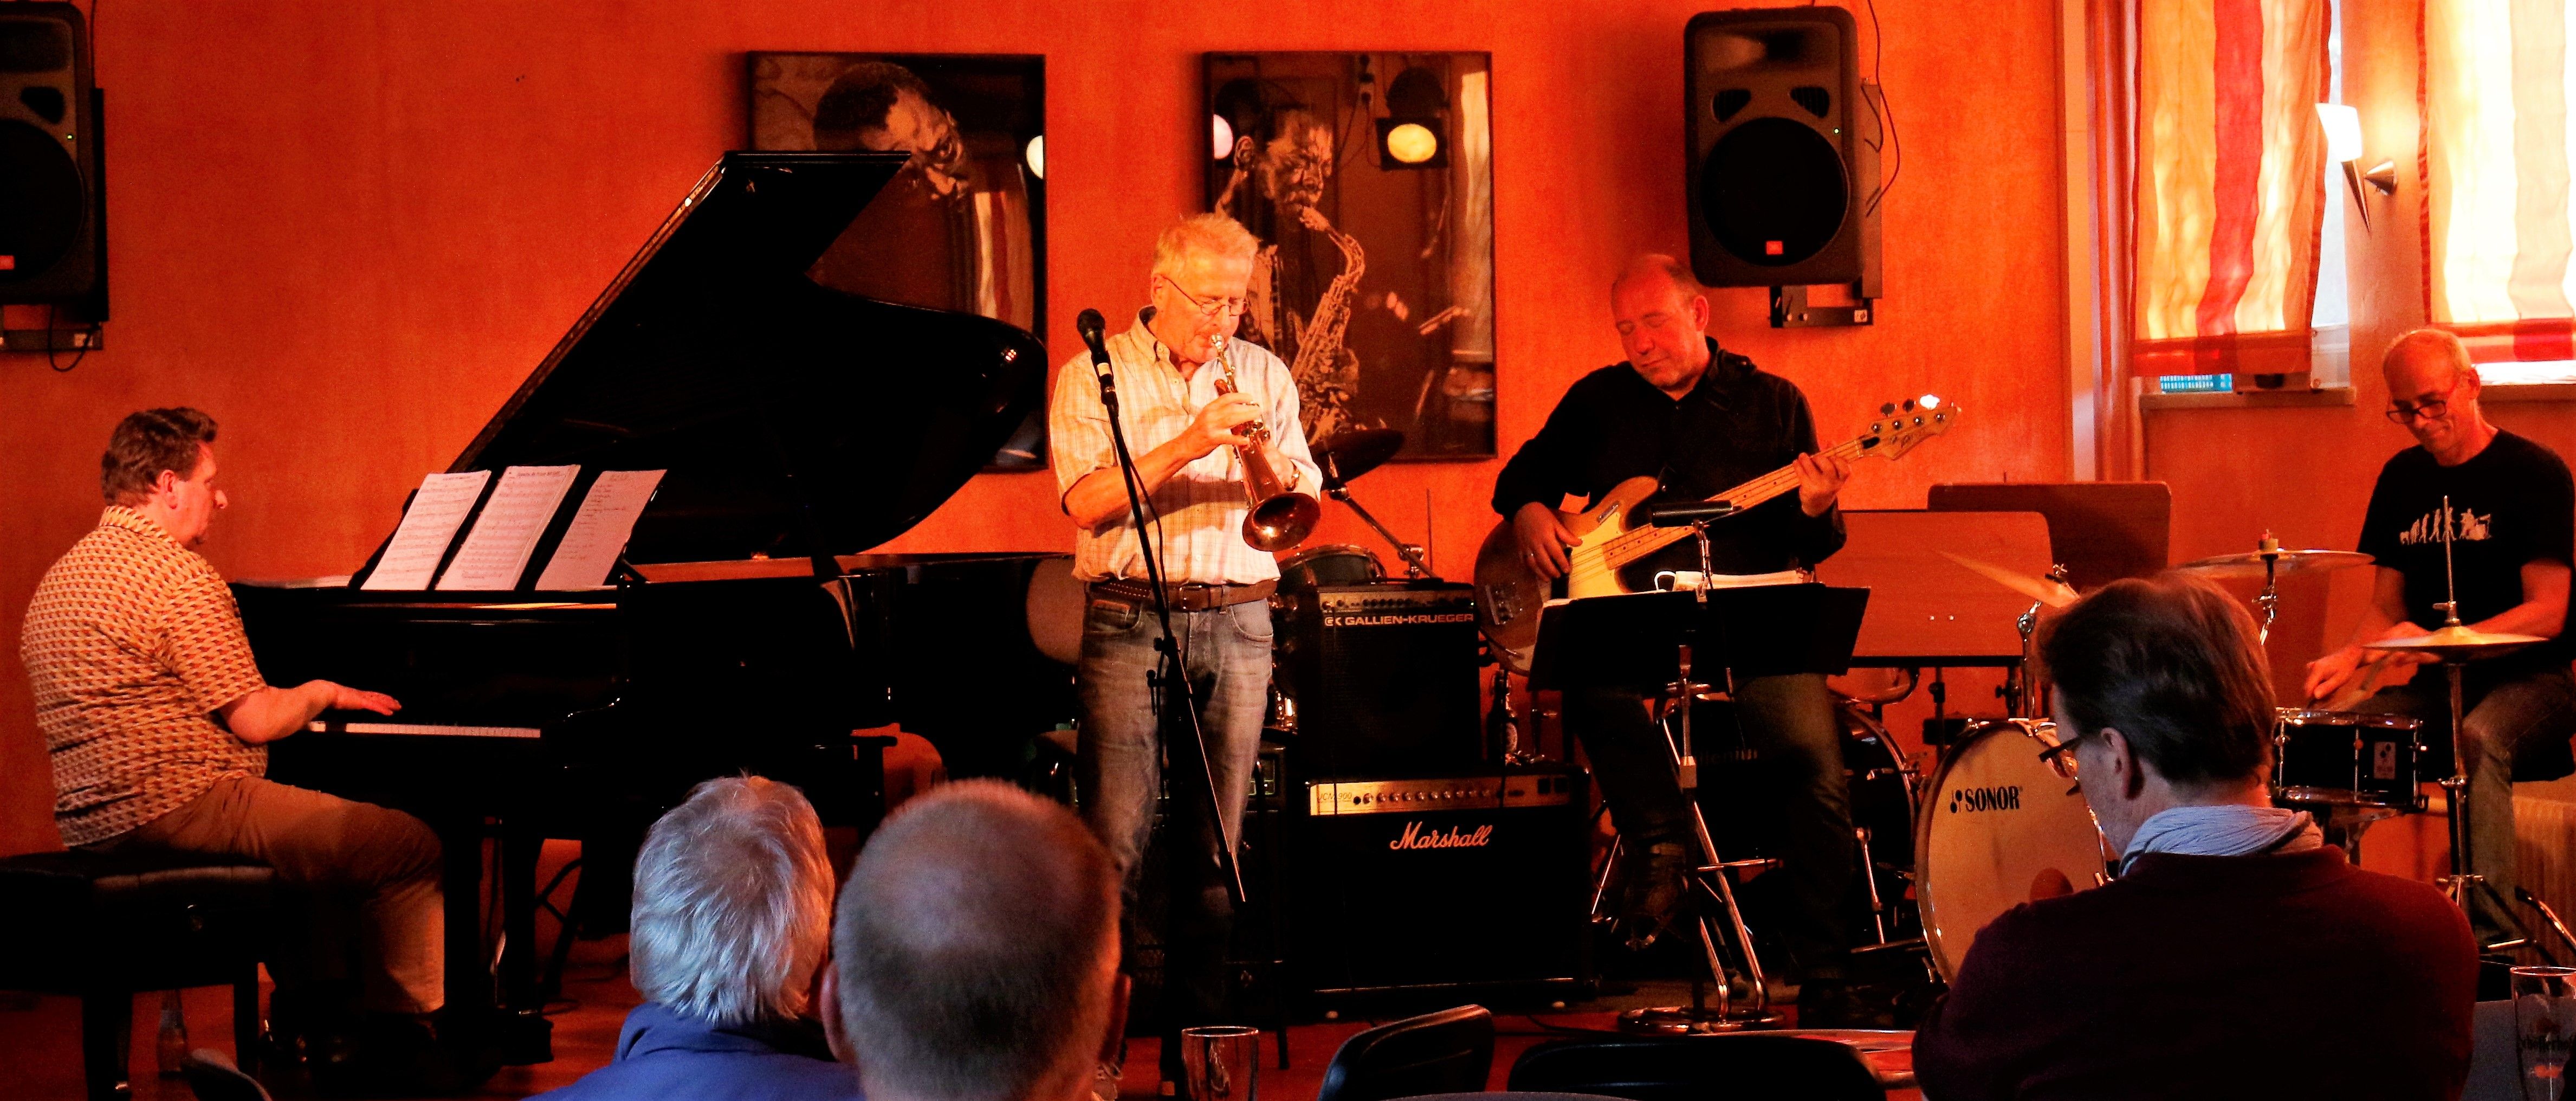 Das Public Rehearsal Jazz Quartet liefert feinsten Jazz von Föhr.